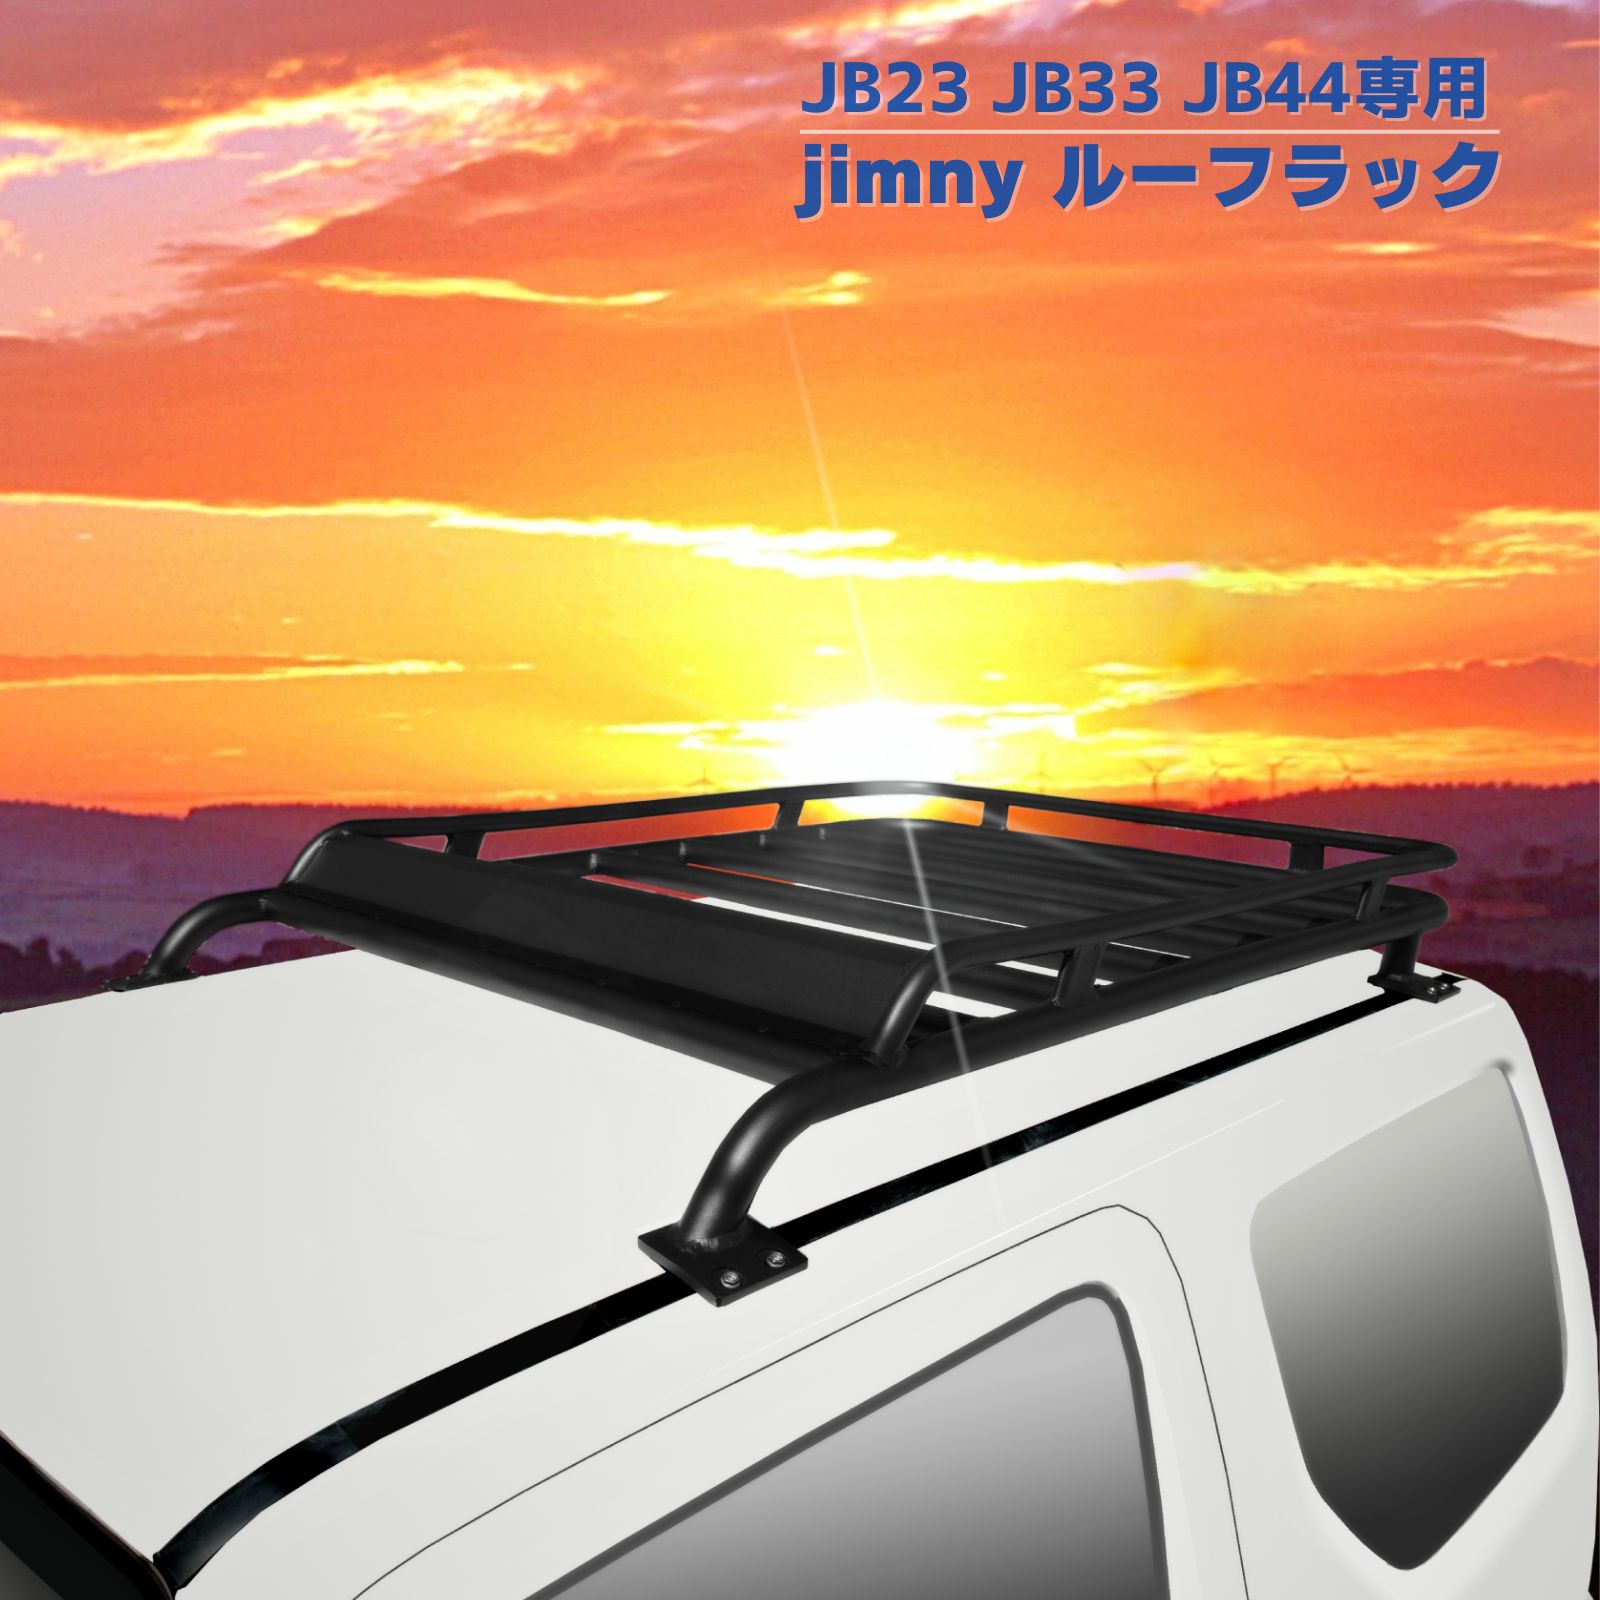  багажник на крыше Suzuki Jimny JB23 JB33 JB43 специальный алюминиевый багажник на крыше багажник на крыше черный простой инструкция имеется сборка не необходимо 